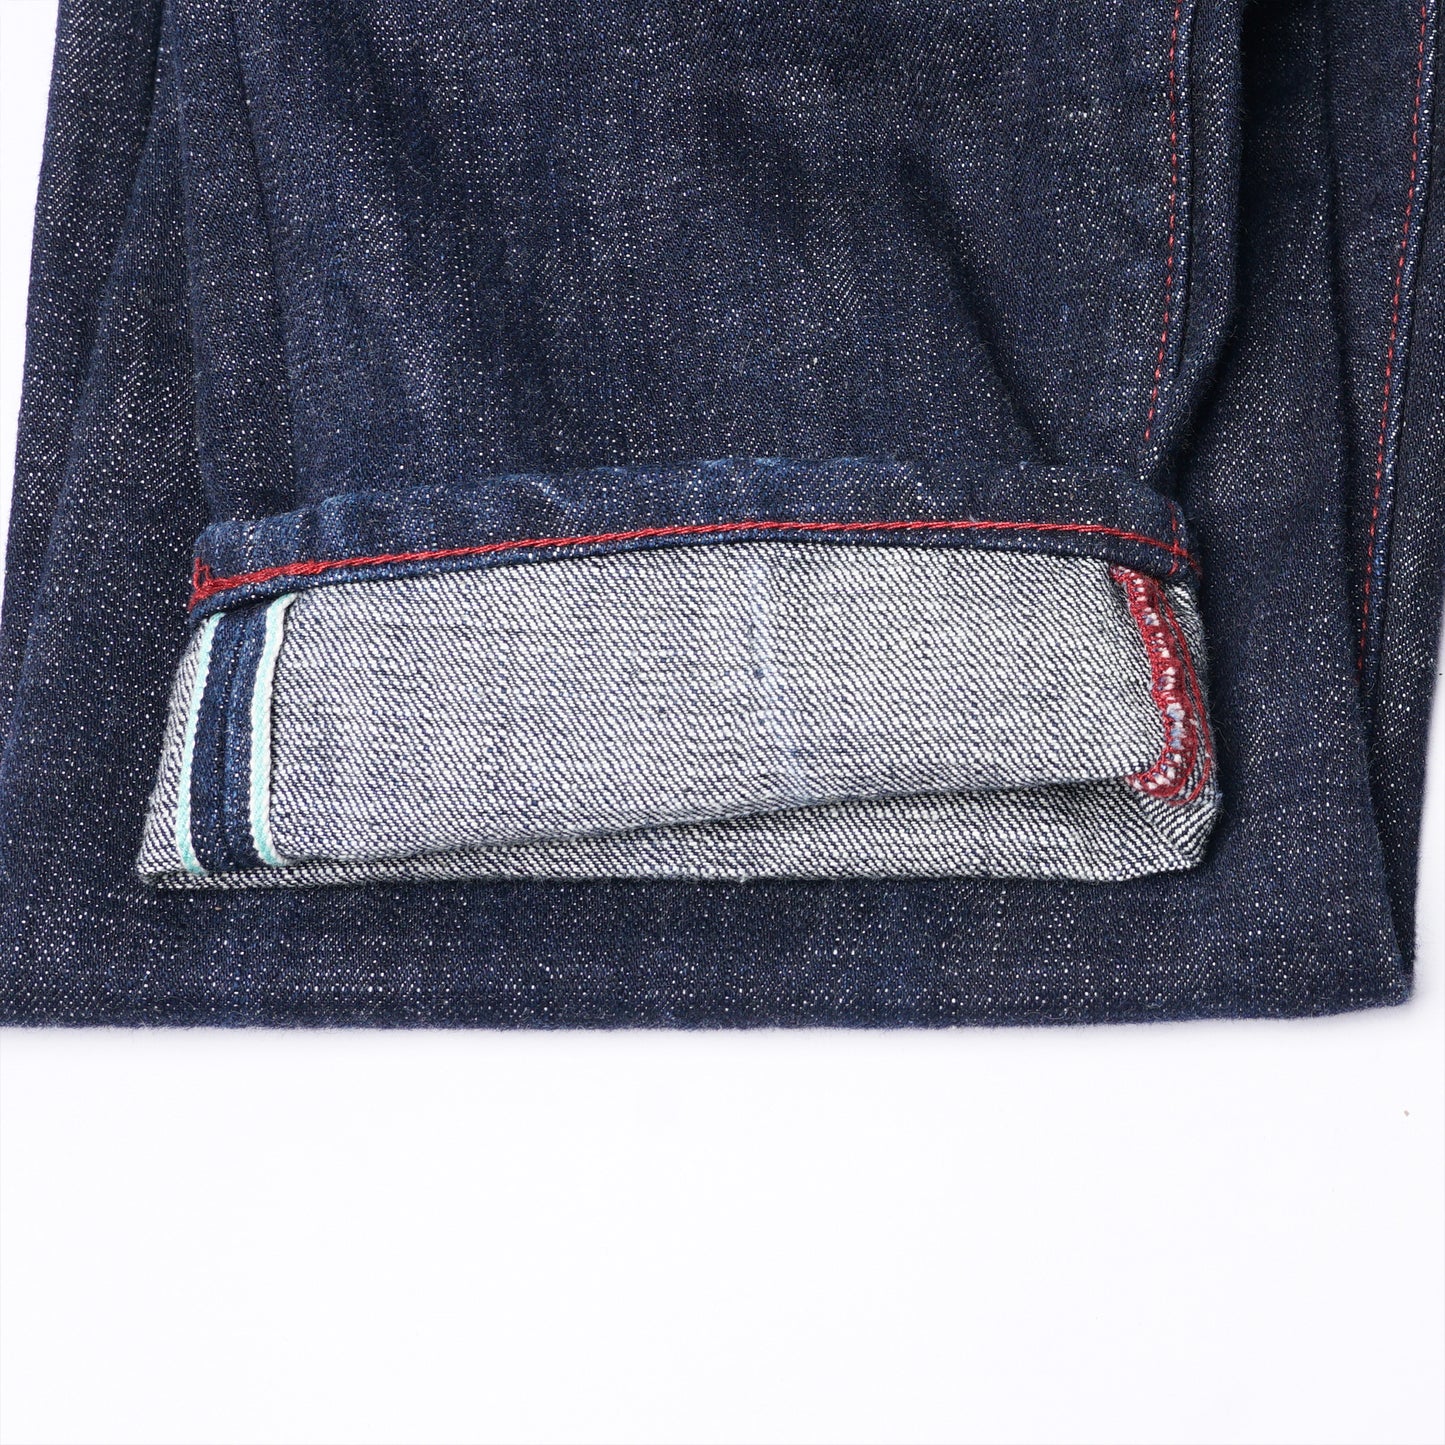 【訂製】H291 18oz. Kaihara Denim Straight Cut Jeans